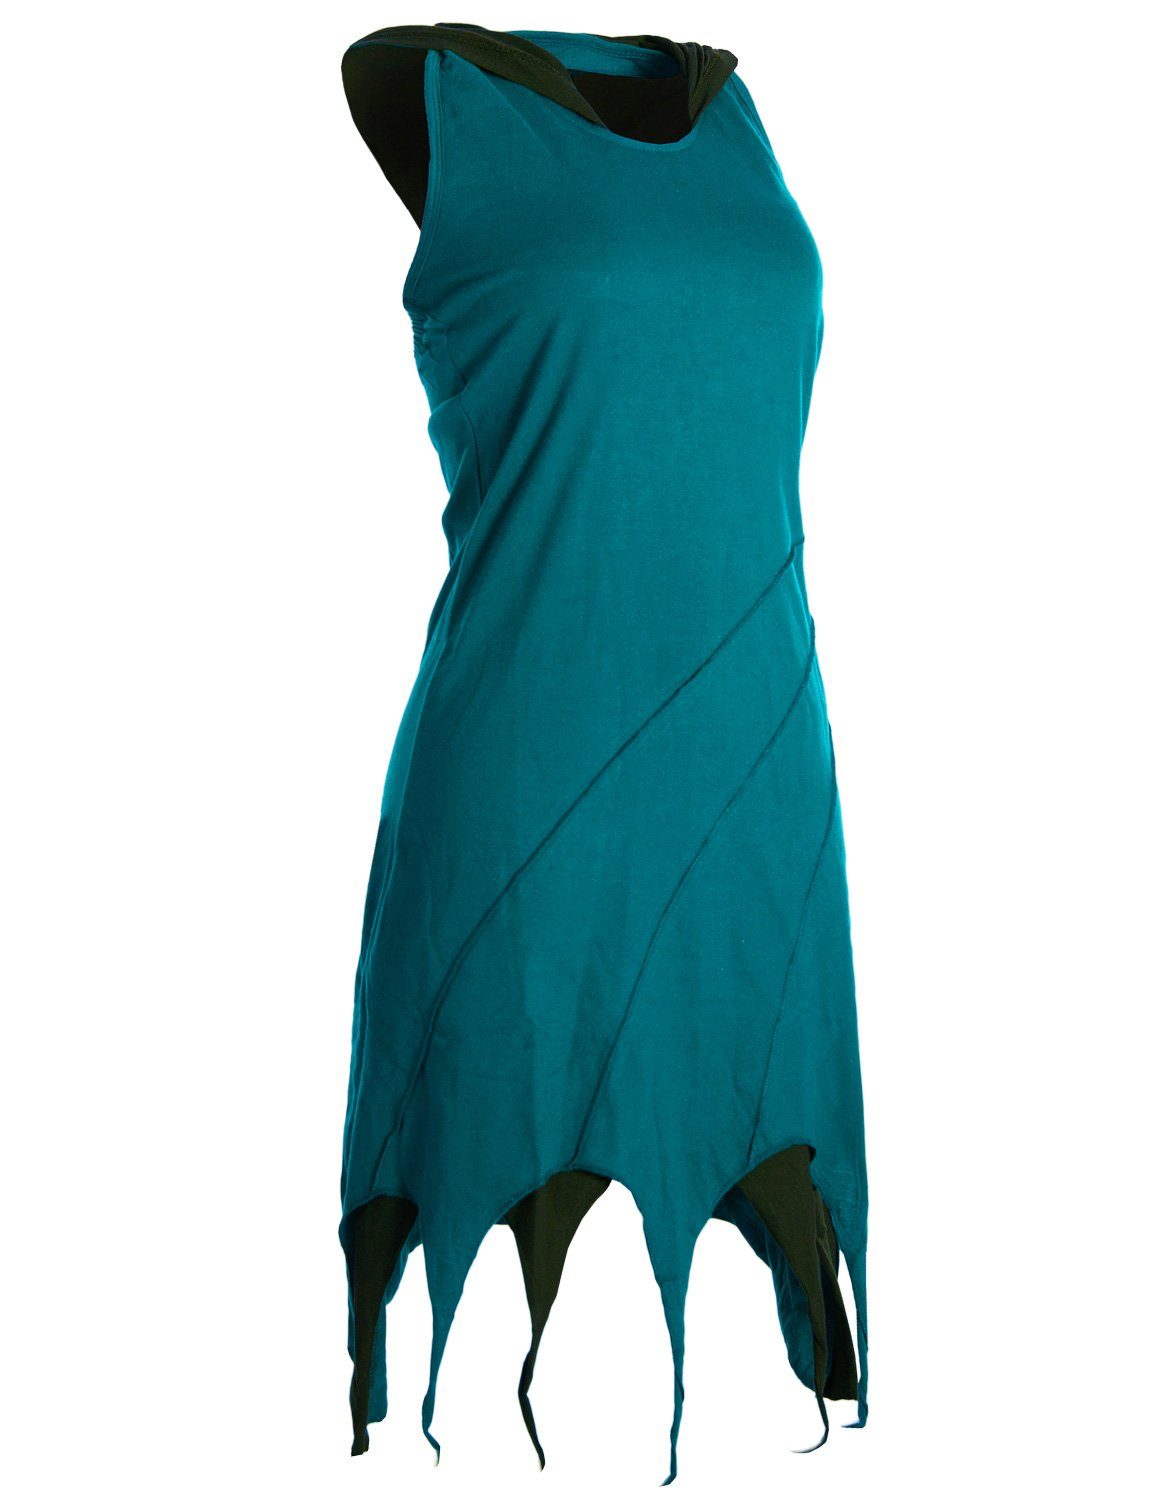 Lagenlook Zipfel-Neckholder türkis aus Kleid Baumwolle Vishes Neckholderkleid Elfen Kapuzen Goa, Hippie,